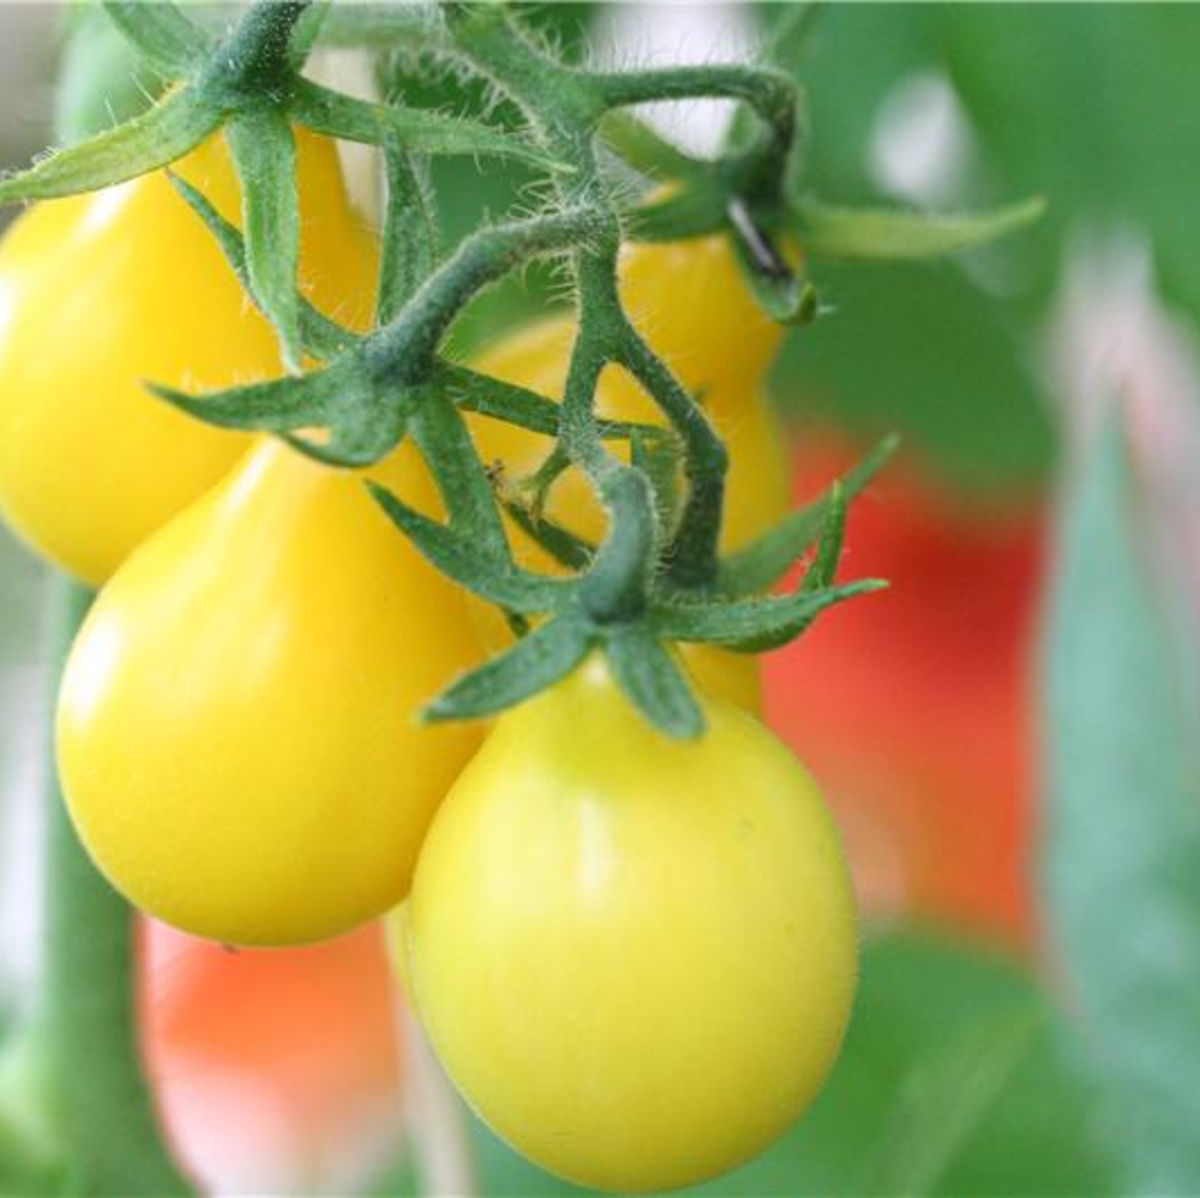 RARE Jaune Petite Poire Tomate 10 Graines Vendeur Britannique